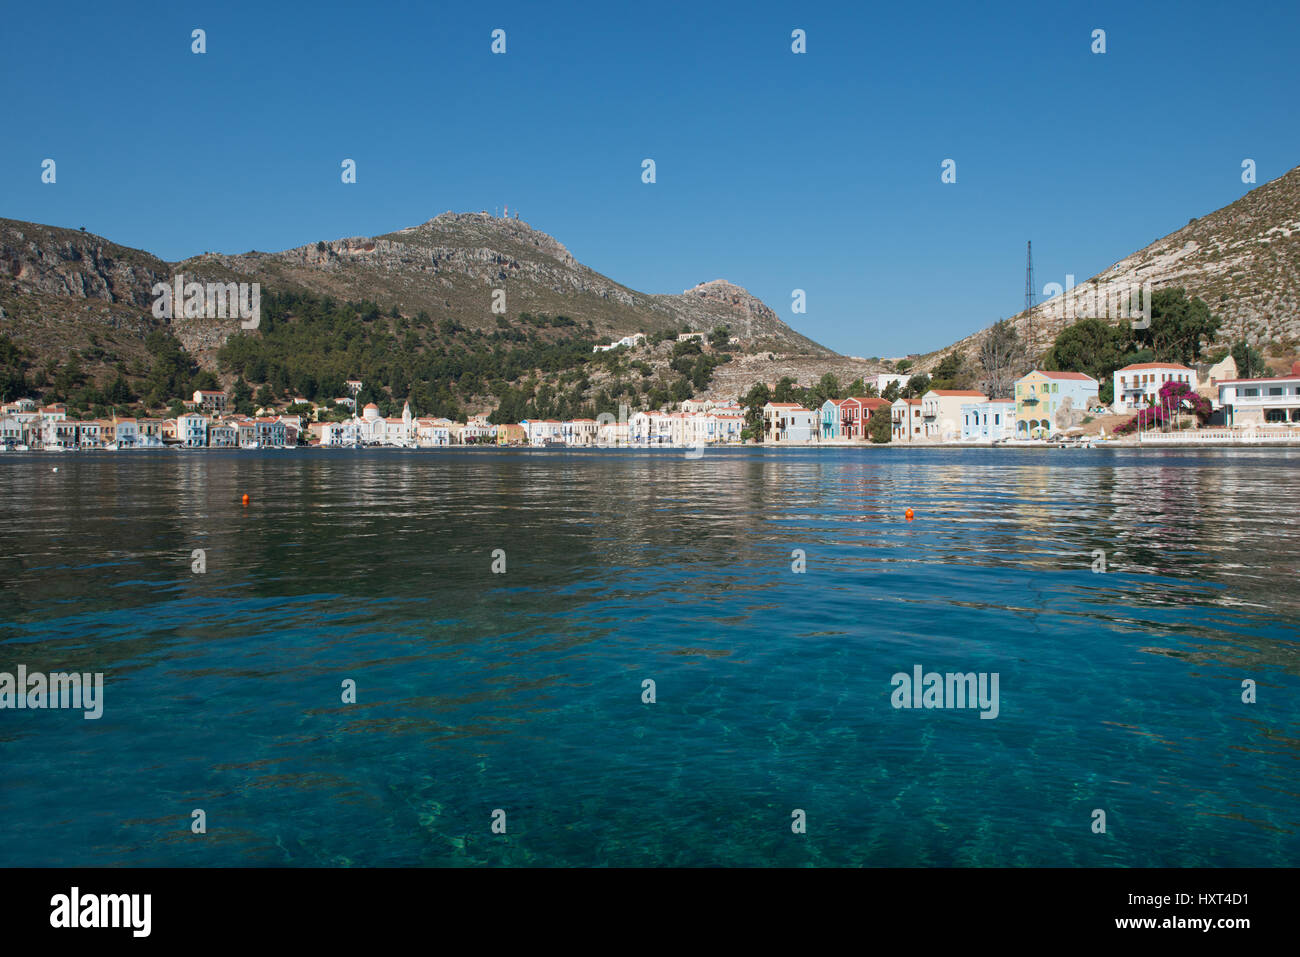 Hafen, weite Bucht türkisem mit Wasser, Reihe von bunten Häusern und kahlen Bergen, Insel Kastellorizo, Dodekanes, Griechenland Foto Stock